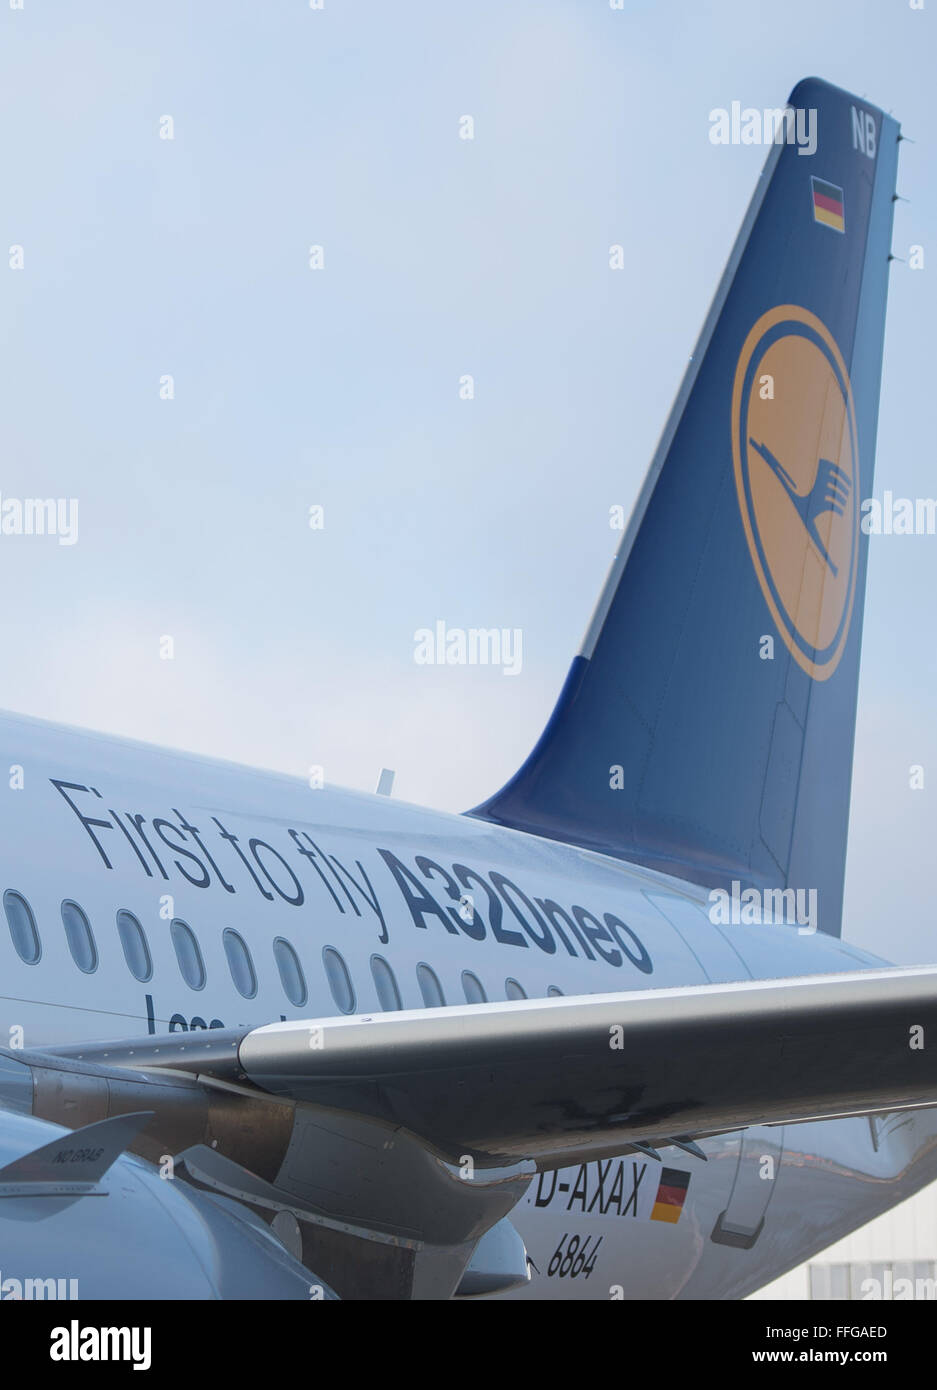 Hambourg, Allemagne. 12 Février, 2016. L'Airbus A320neo qui est représenté sur les locaux de l'usine d'Airbus à Hambourg, Allemagne, 12 février 2016. Constructeur d'avions Airbus est officiellement à son tour sur le premier A320neo pour compagnie aérienne allemande Lufthansa. La nouvelle aile conseils, également appelé 'sharklets', et le nouveau turbines Pratt & Whitney sont des caractéristiques des nouveaux appareils. Photo : Lukas SCHULZE/dpa/Alamy Live News Banque D'Images